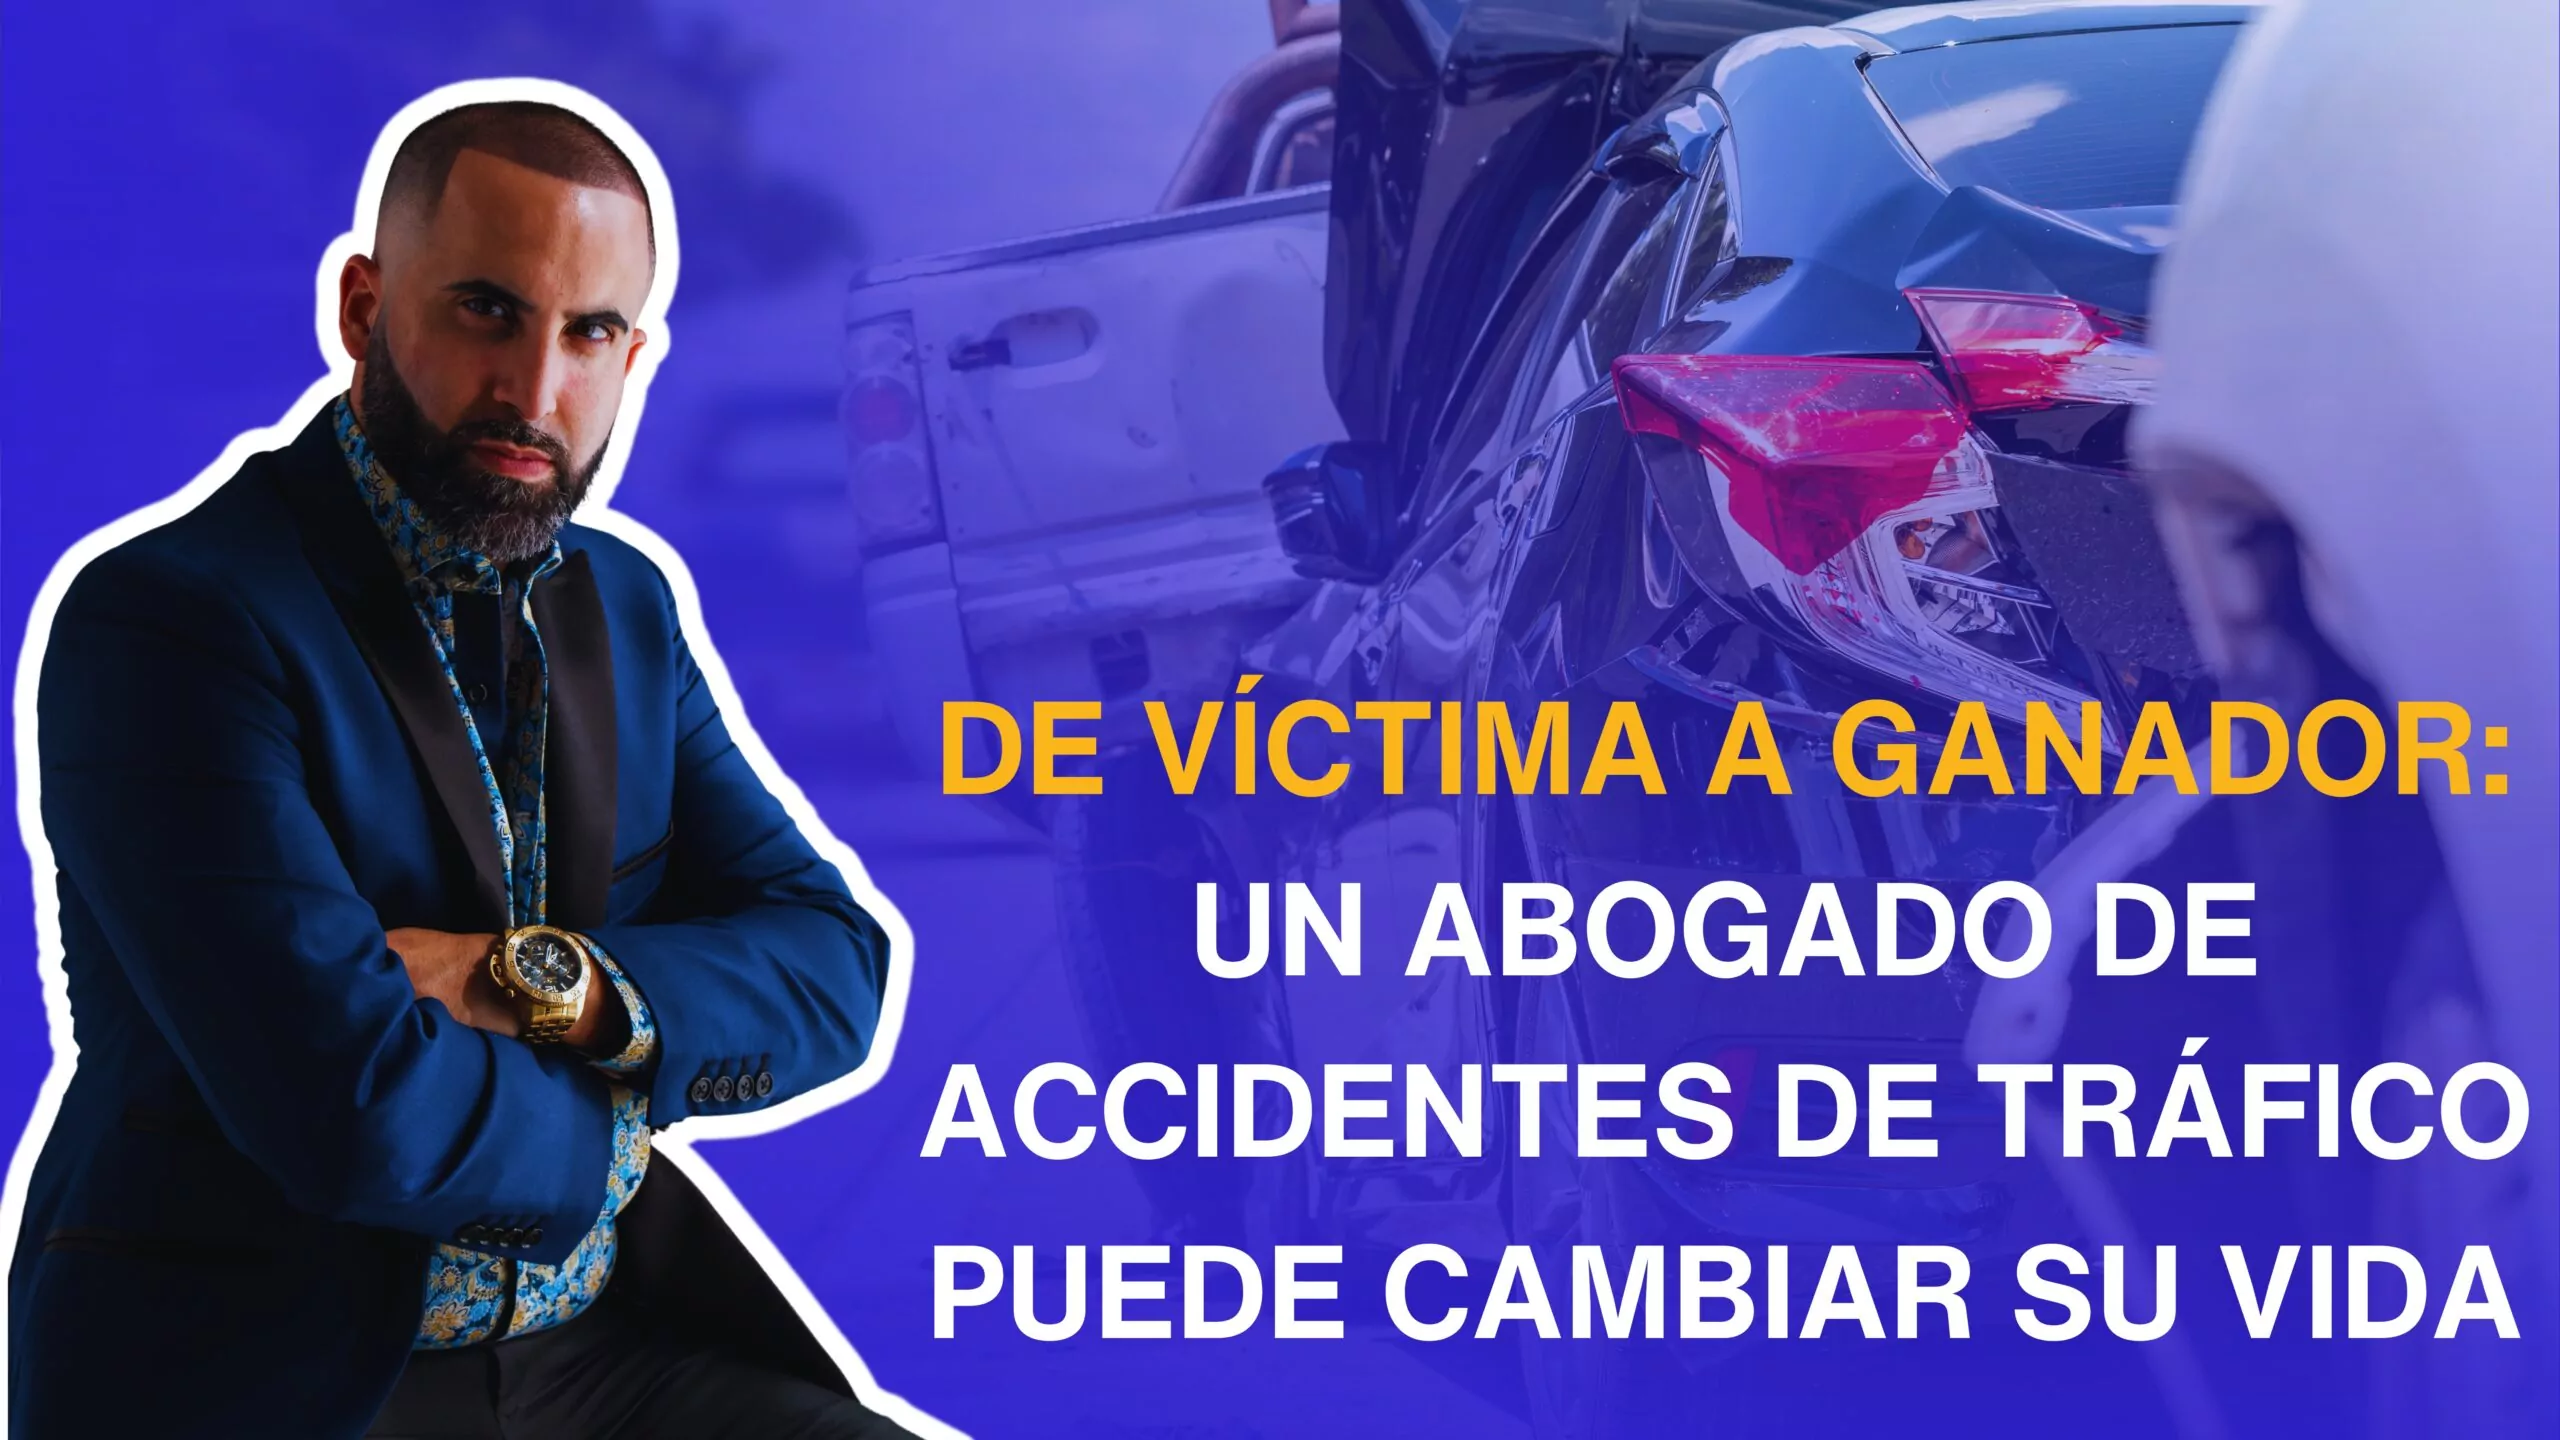 De víctima a ganador: Un abogado de accidentes de tráfico puede cambiar su vida